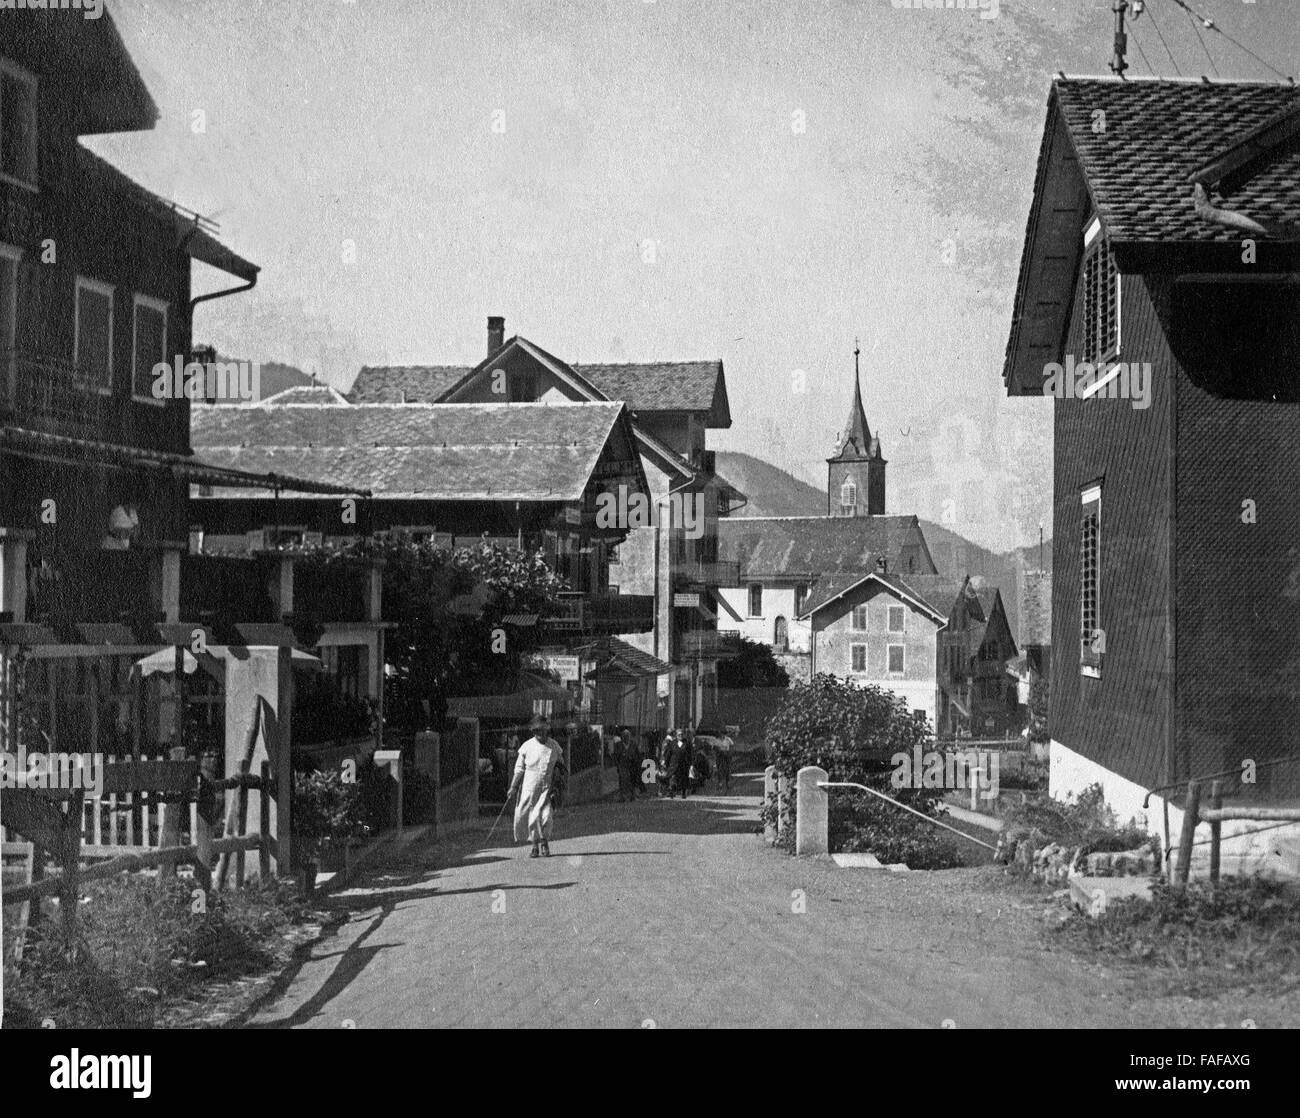 Straße Und Häuser in Seelisberg Im Kanton Uri, Schweiz 1930er Jahre. Straße mit Häusern in Seelisberg im Kanton Uri, Schweiz der 1930er Jahre. Stockfoto